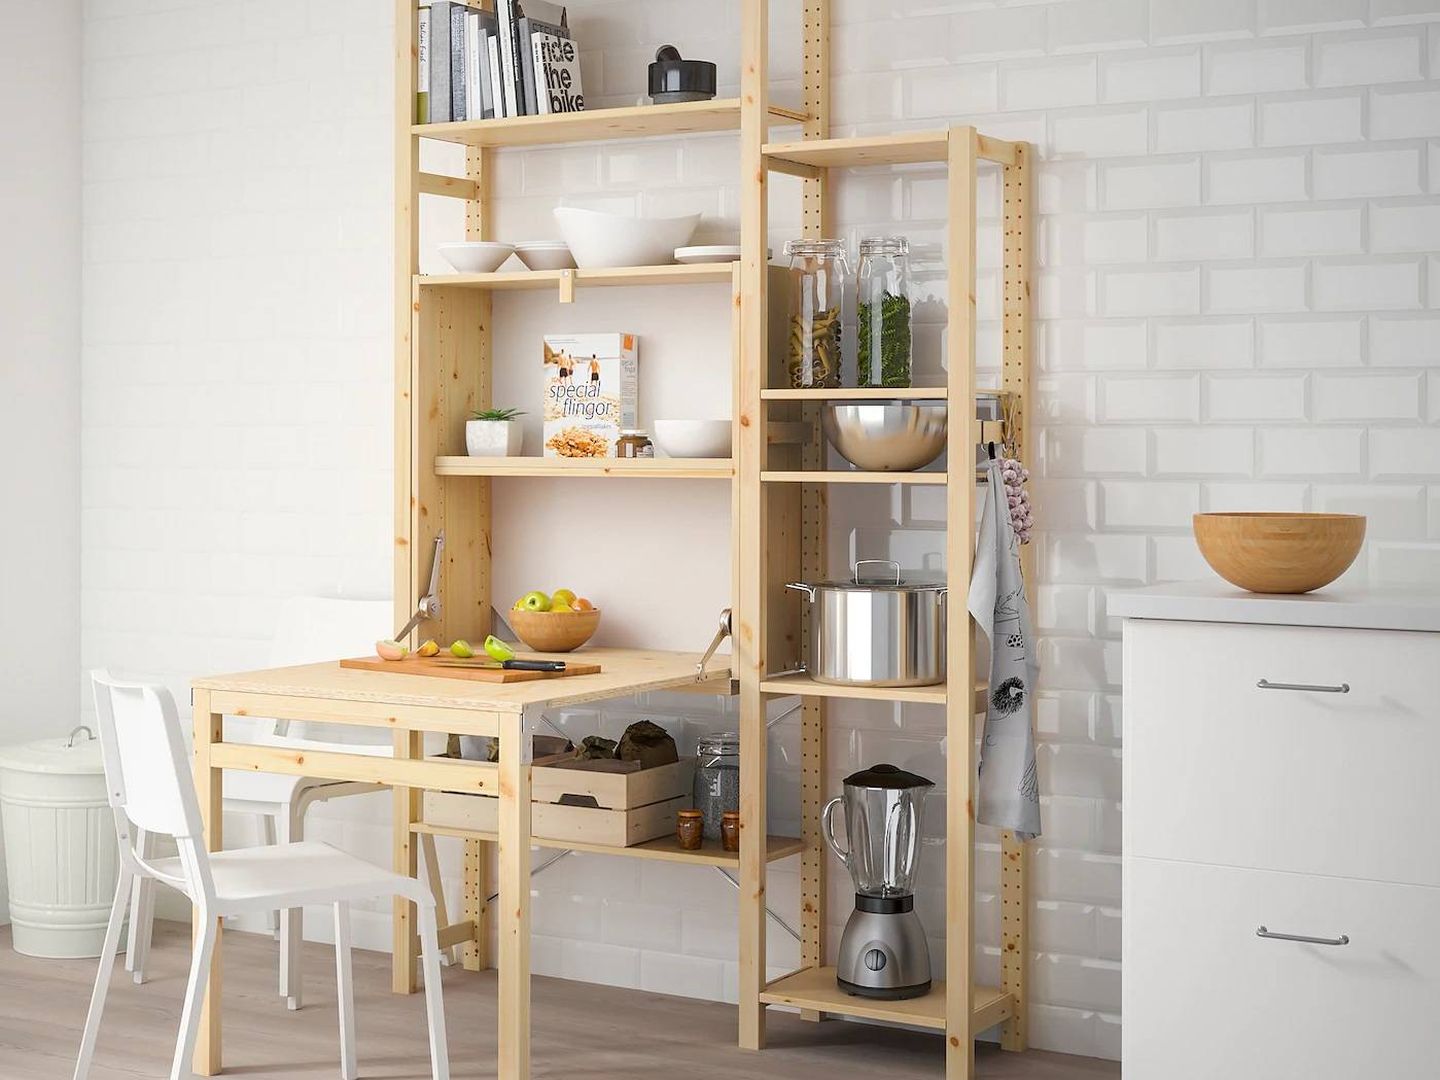 Dormitorios, salón, cocina... todas las estancias son adecuadas para este mueble de Ikea. (Cortesía)